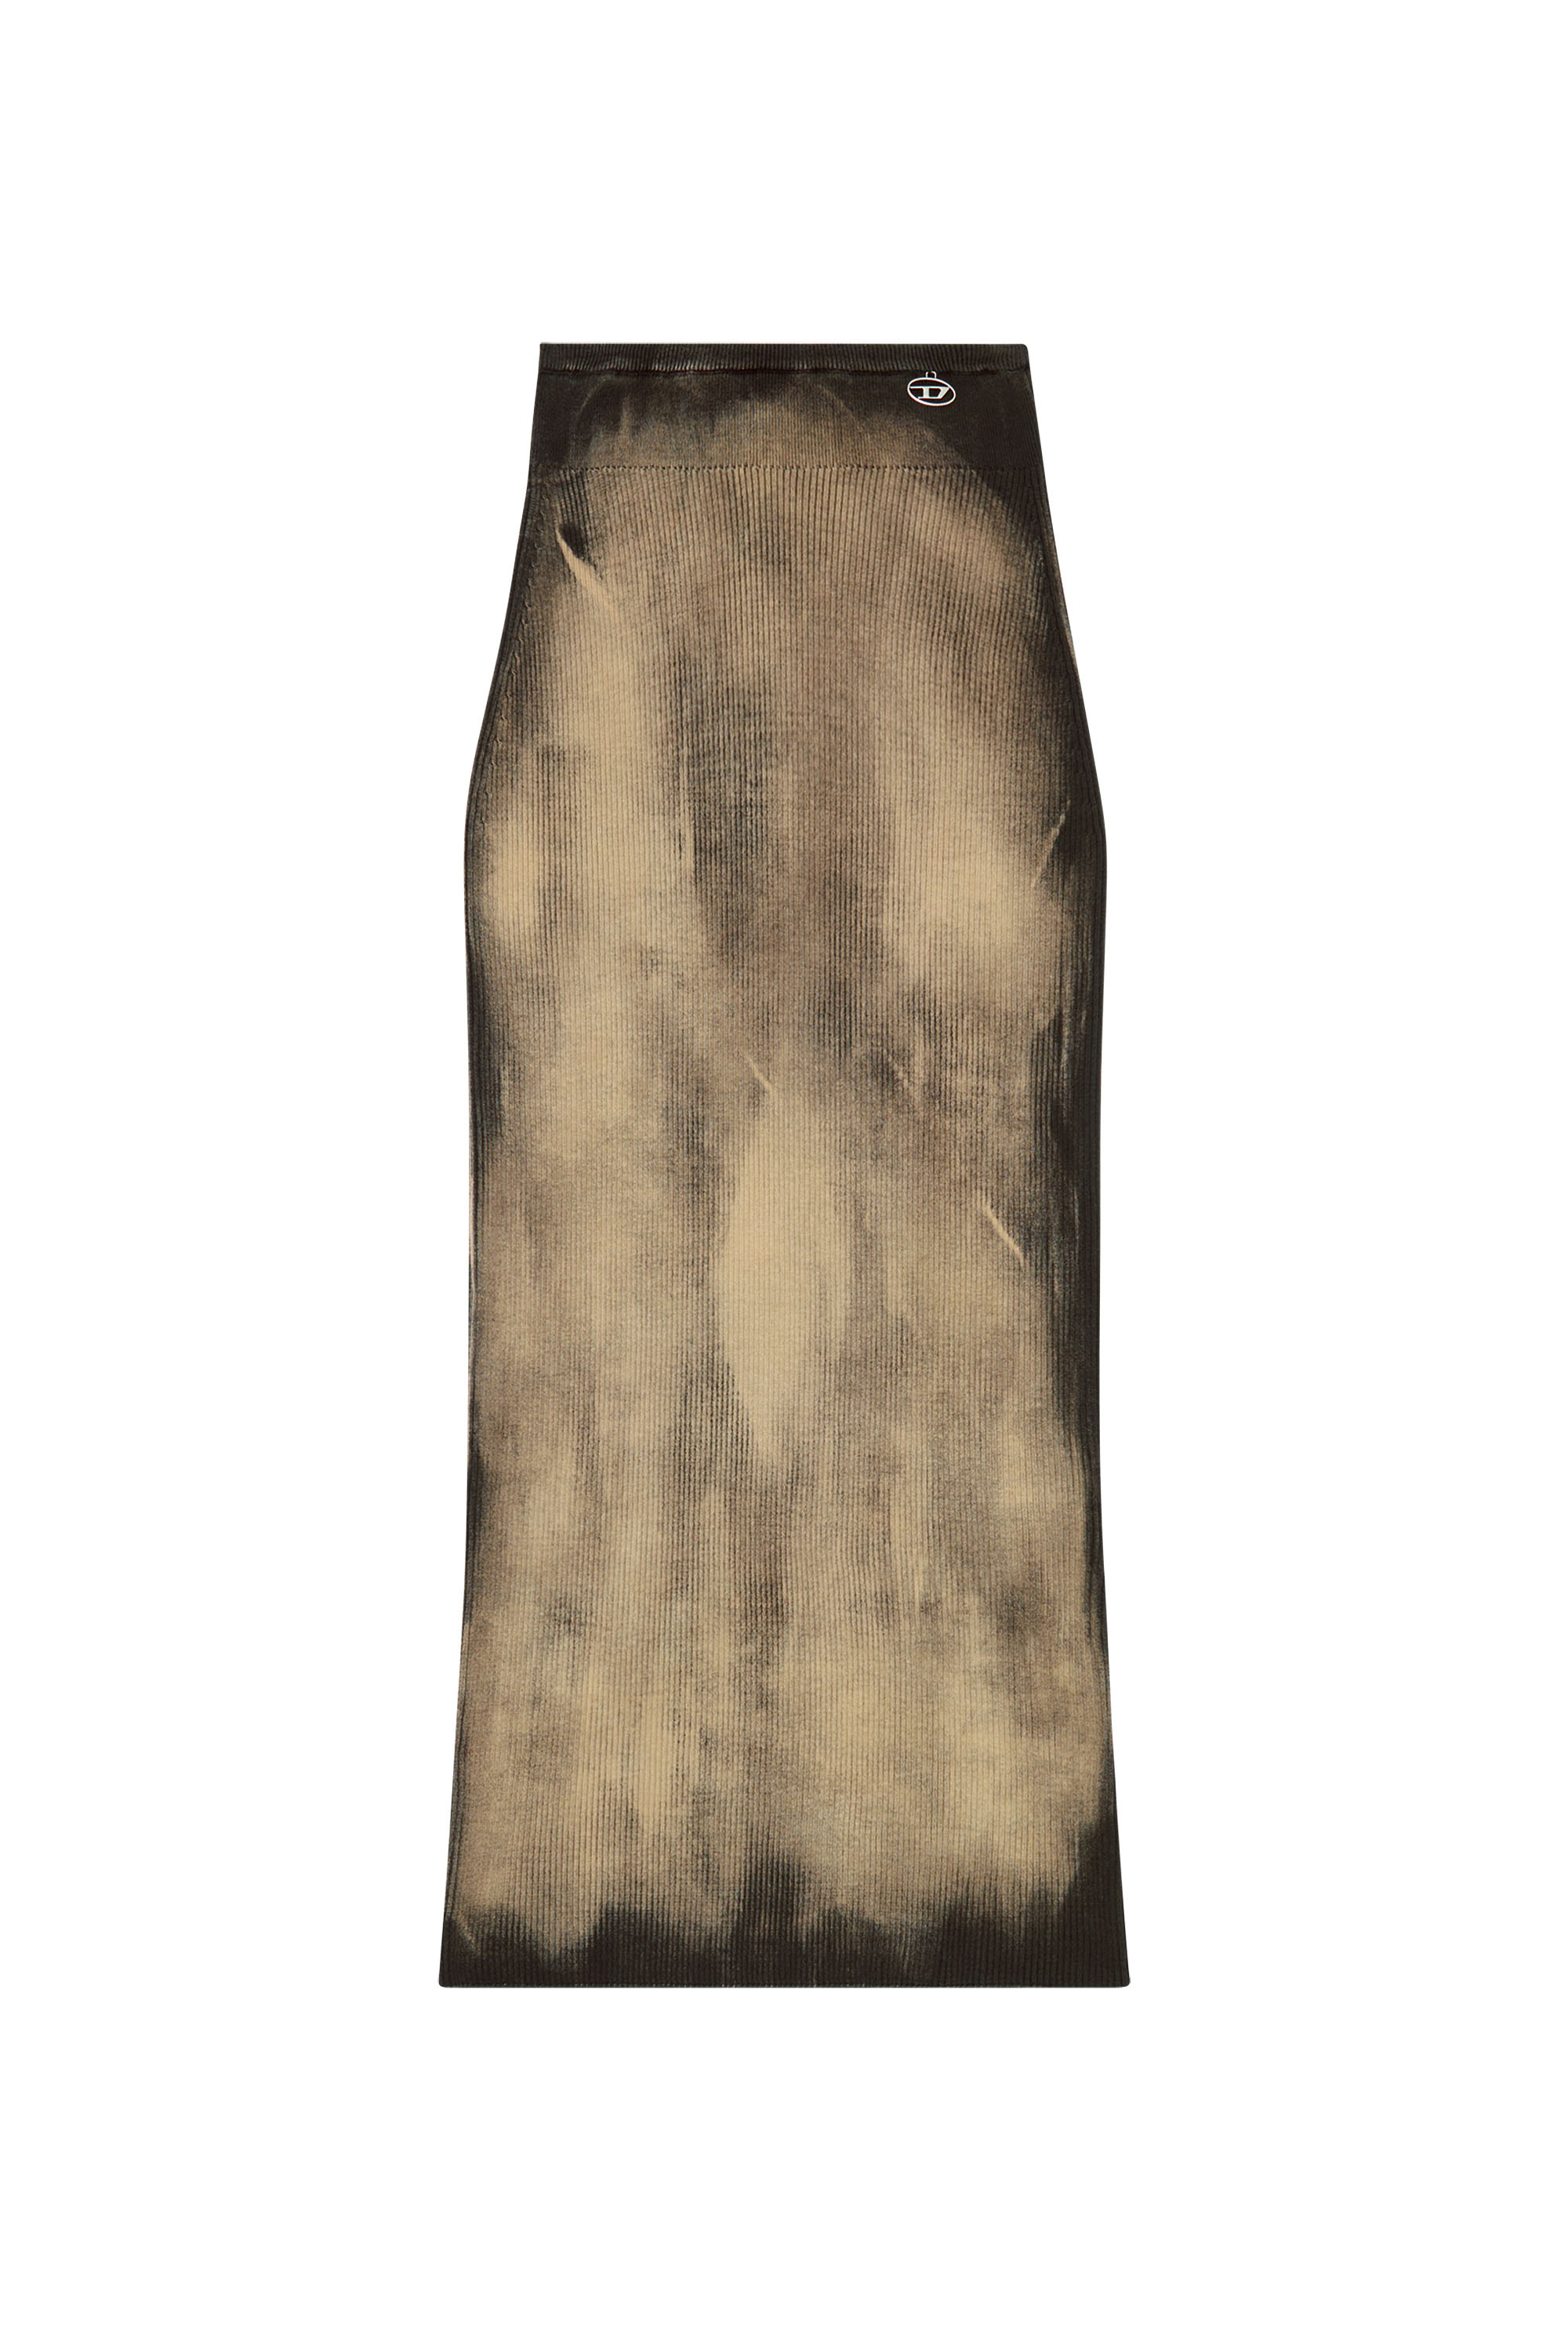 Diesel - M-DELMA, Mujer Falda midi de tejido en canalé tratado in Marrón - Image 5